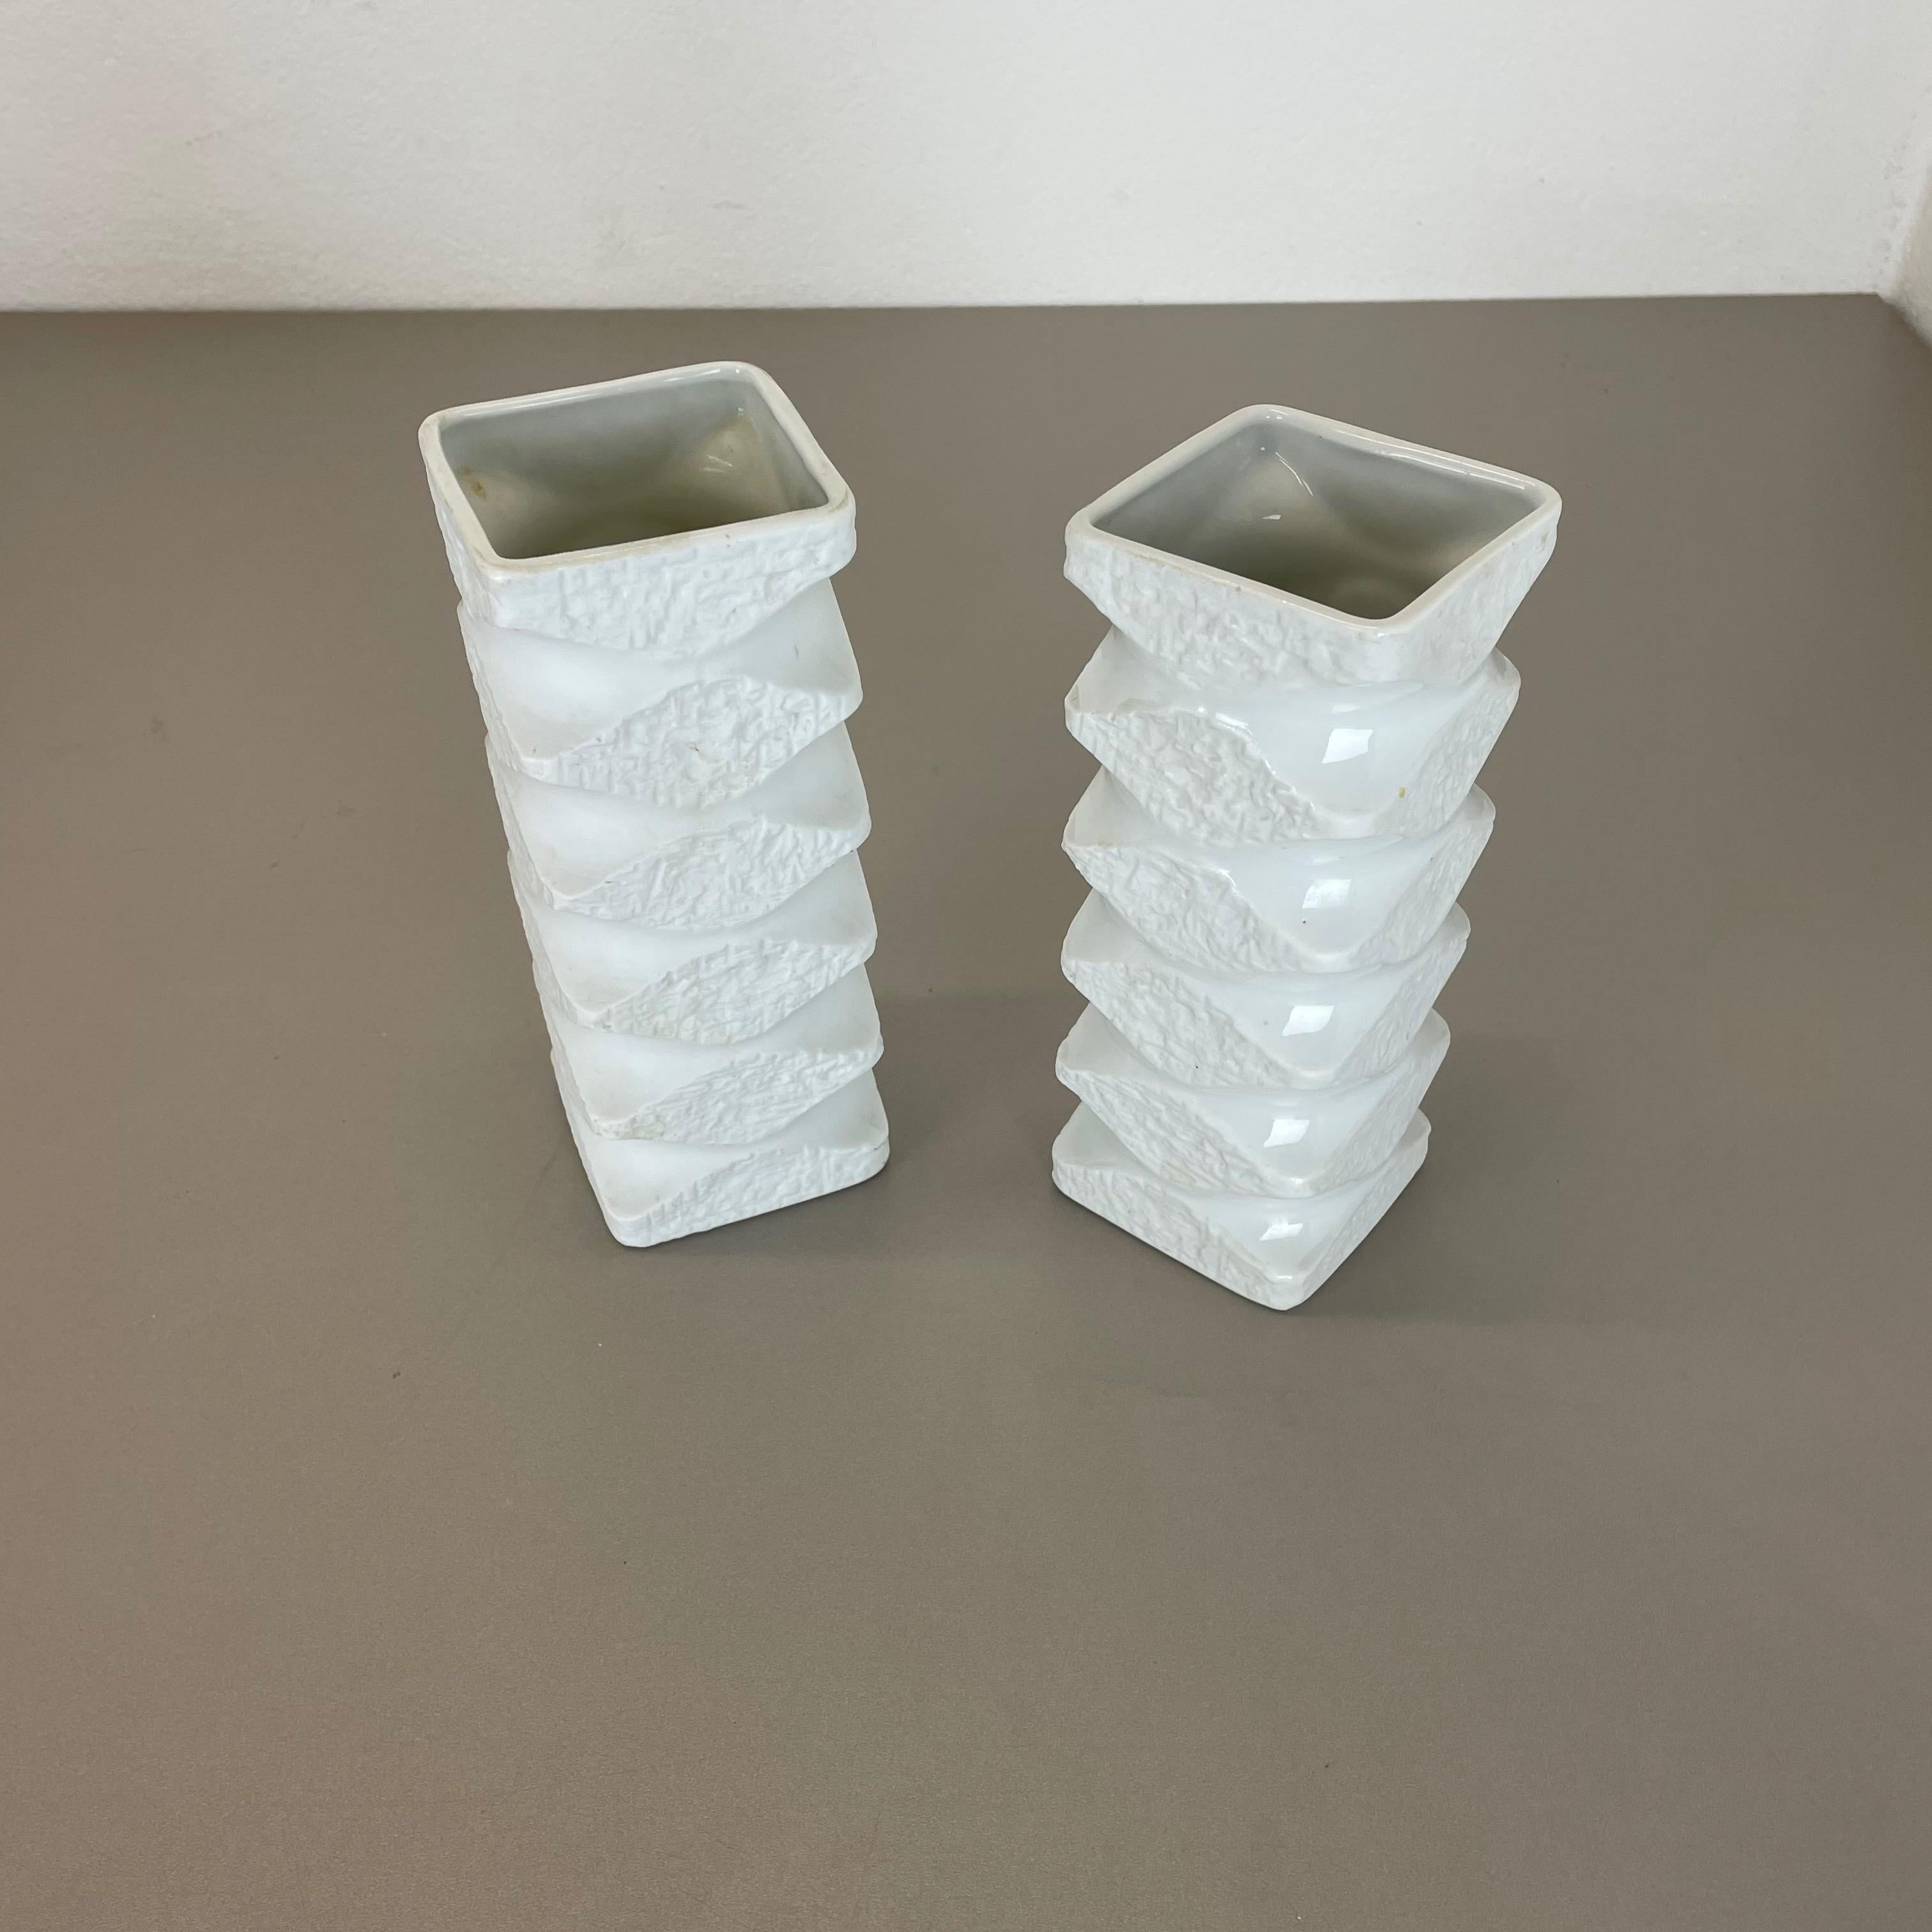 20th Century Set of 2 Original Porcelain OP Art Vase Made by Royal Bavaria KPM Germany, 1970s For Sale